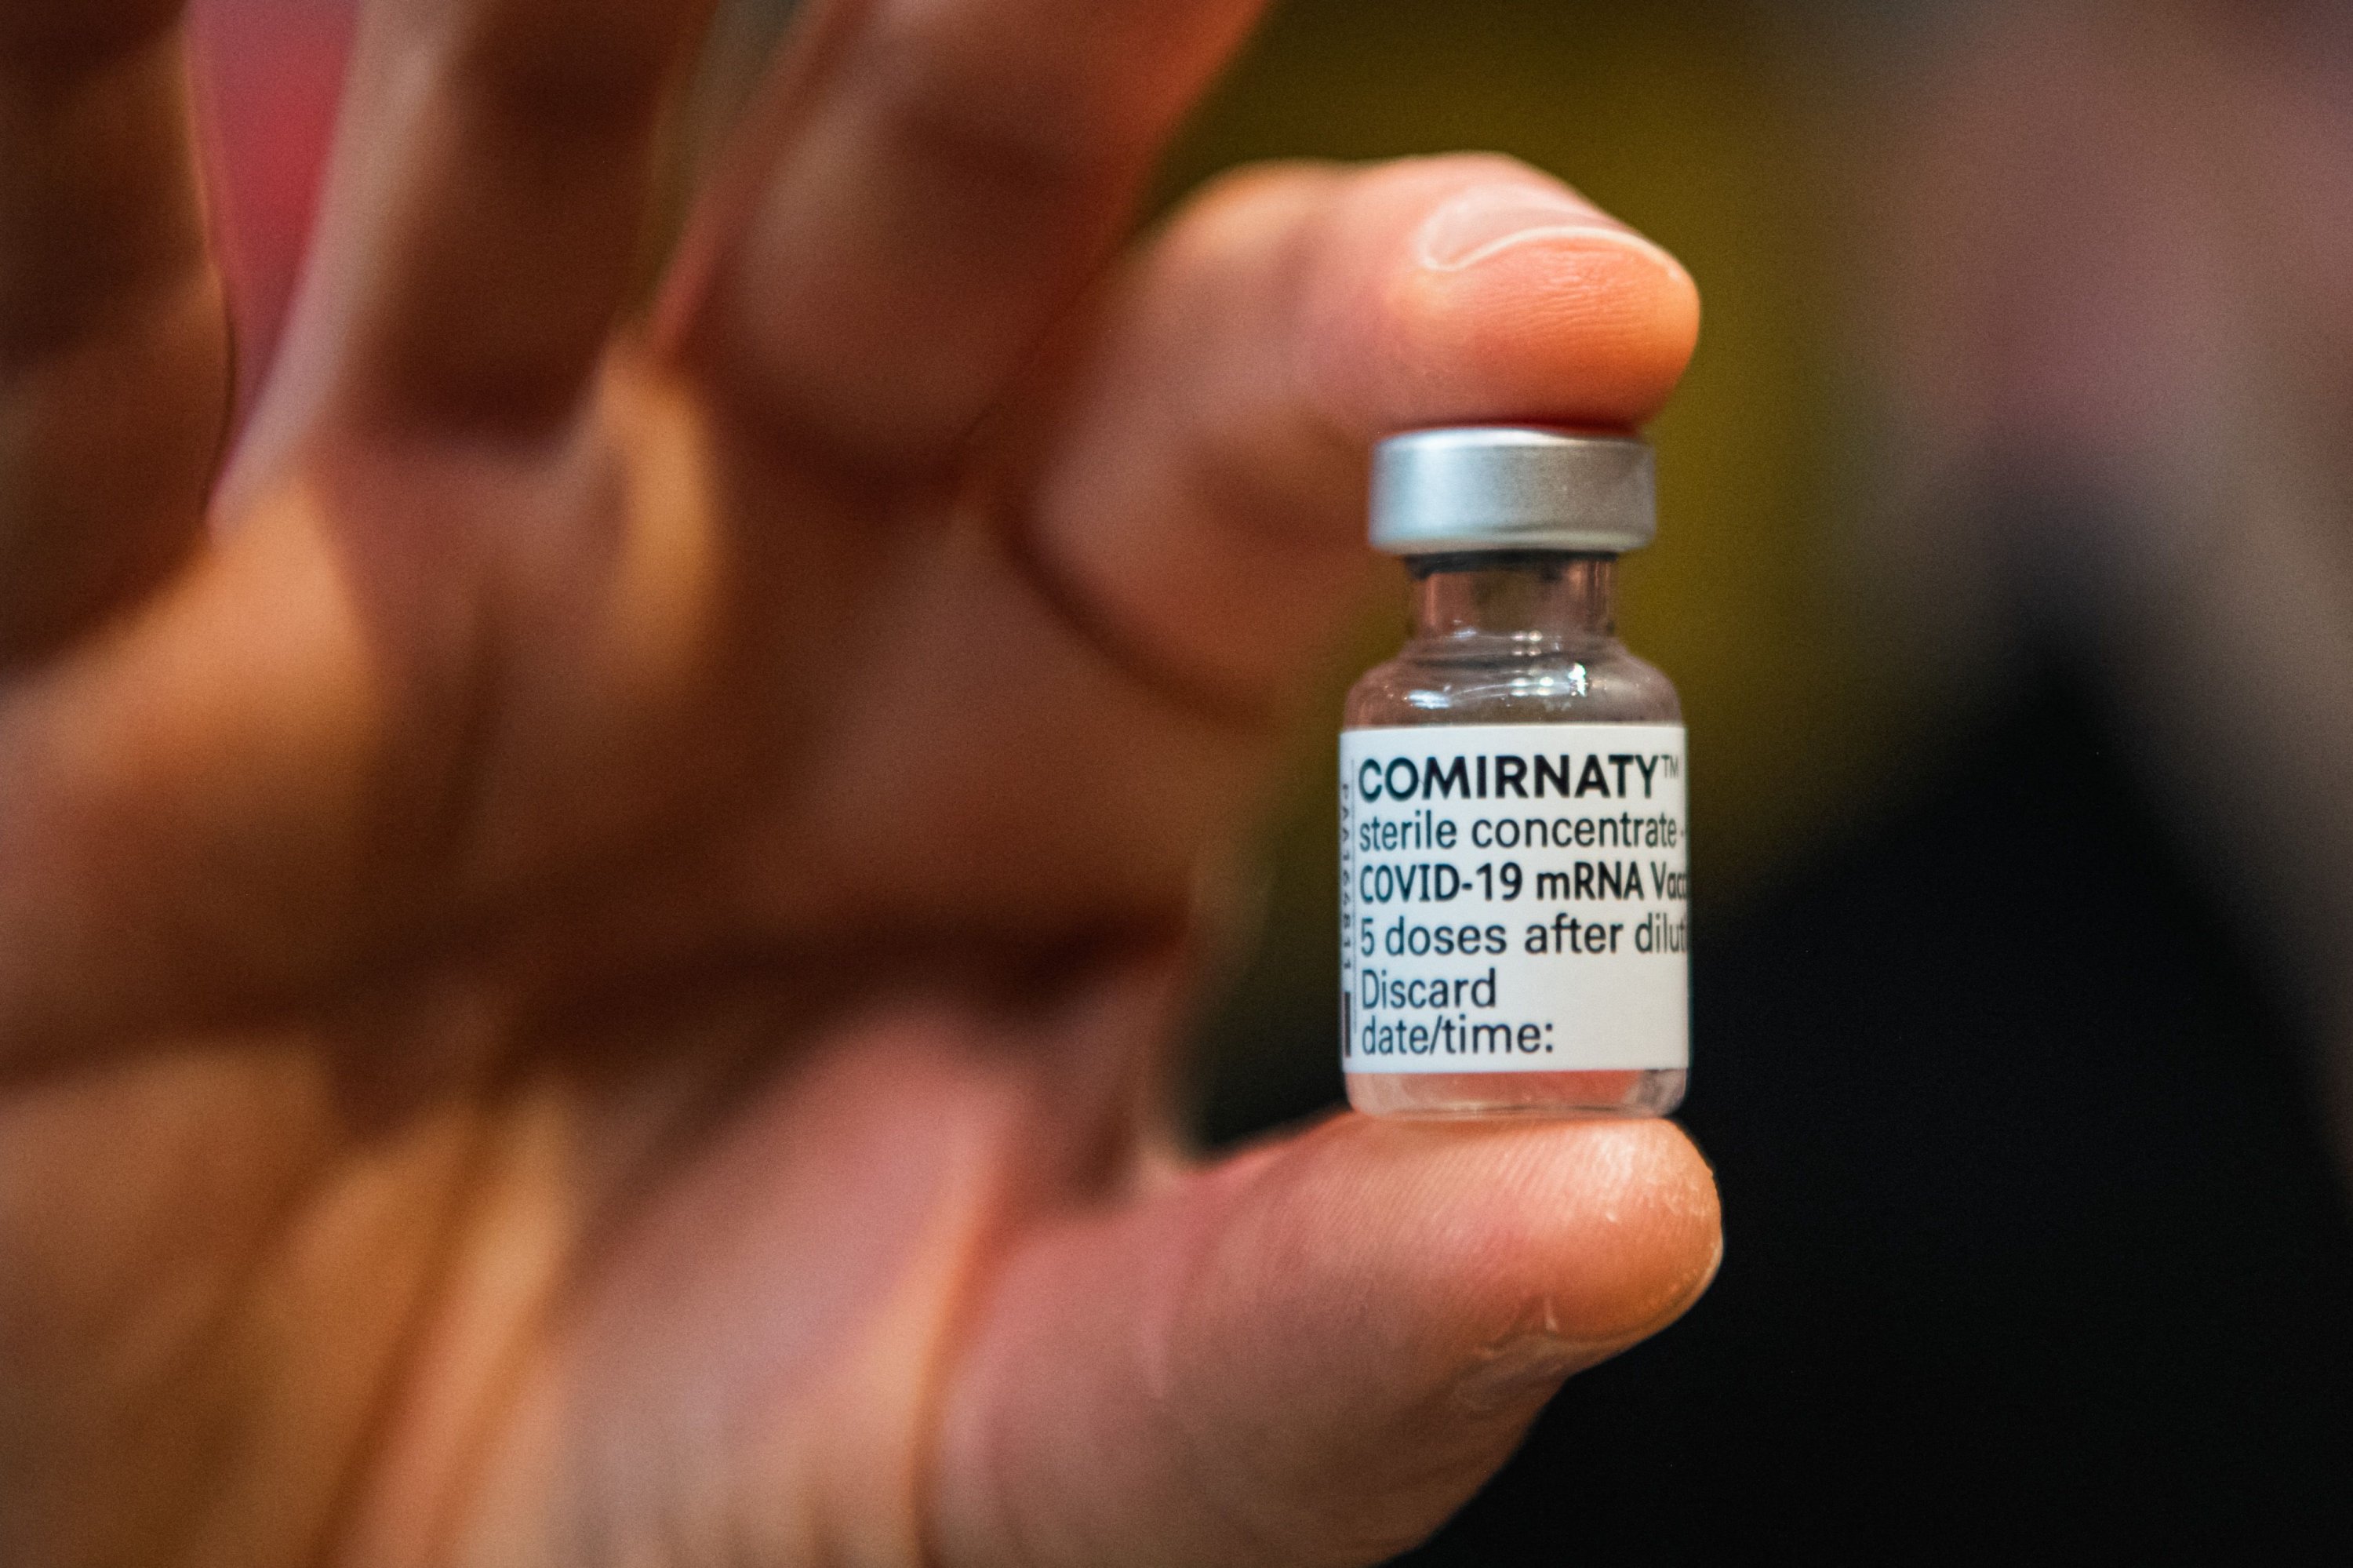 วัคซีน Comirnaty ของ Pfizer / BioNTech ได้ผล 75%